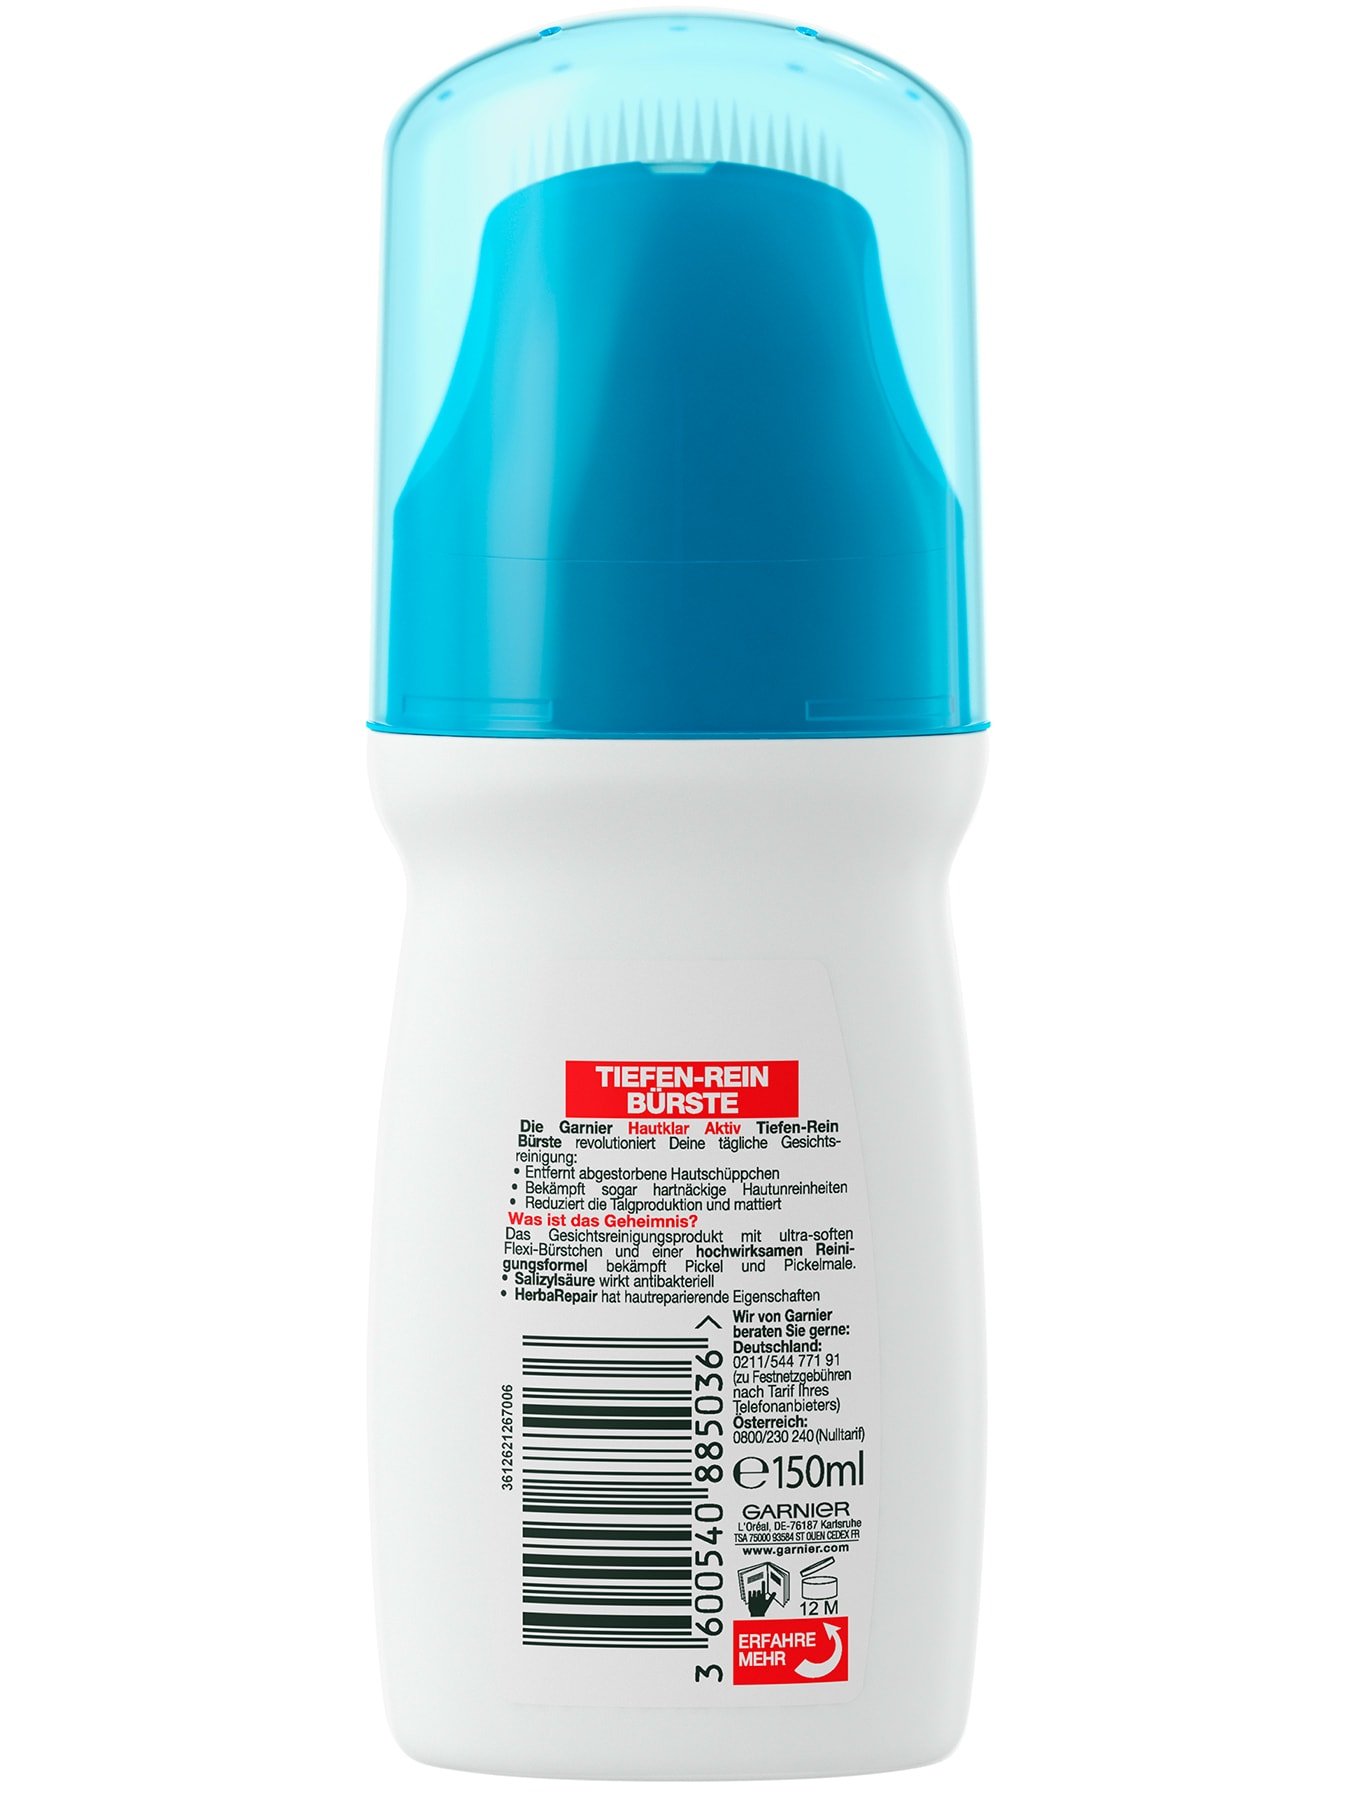 Garnier Hautklar Aktiv Tiefen-Rein Bürste Produktverpackung hinten mit Inhaltsstoffen